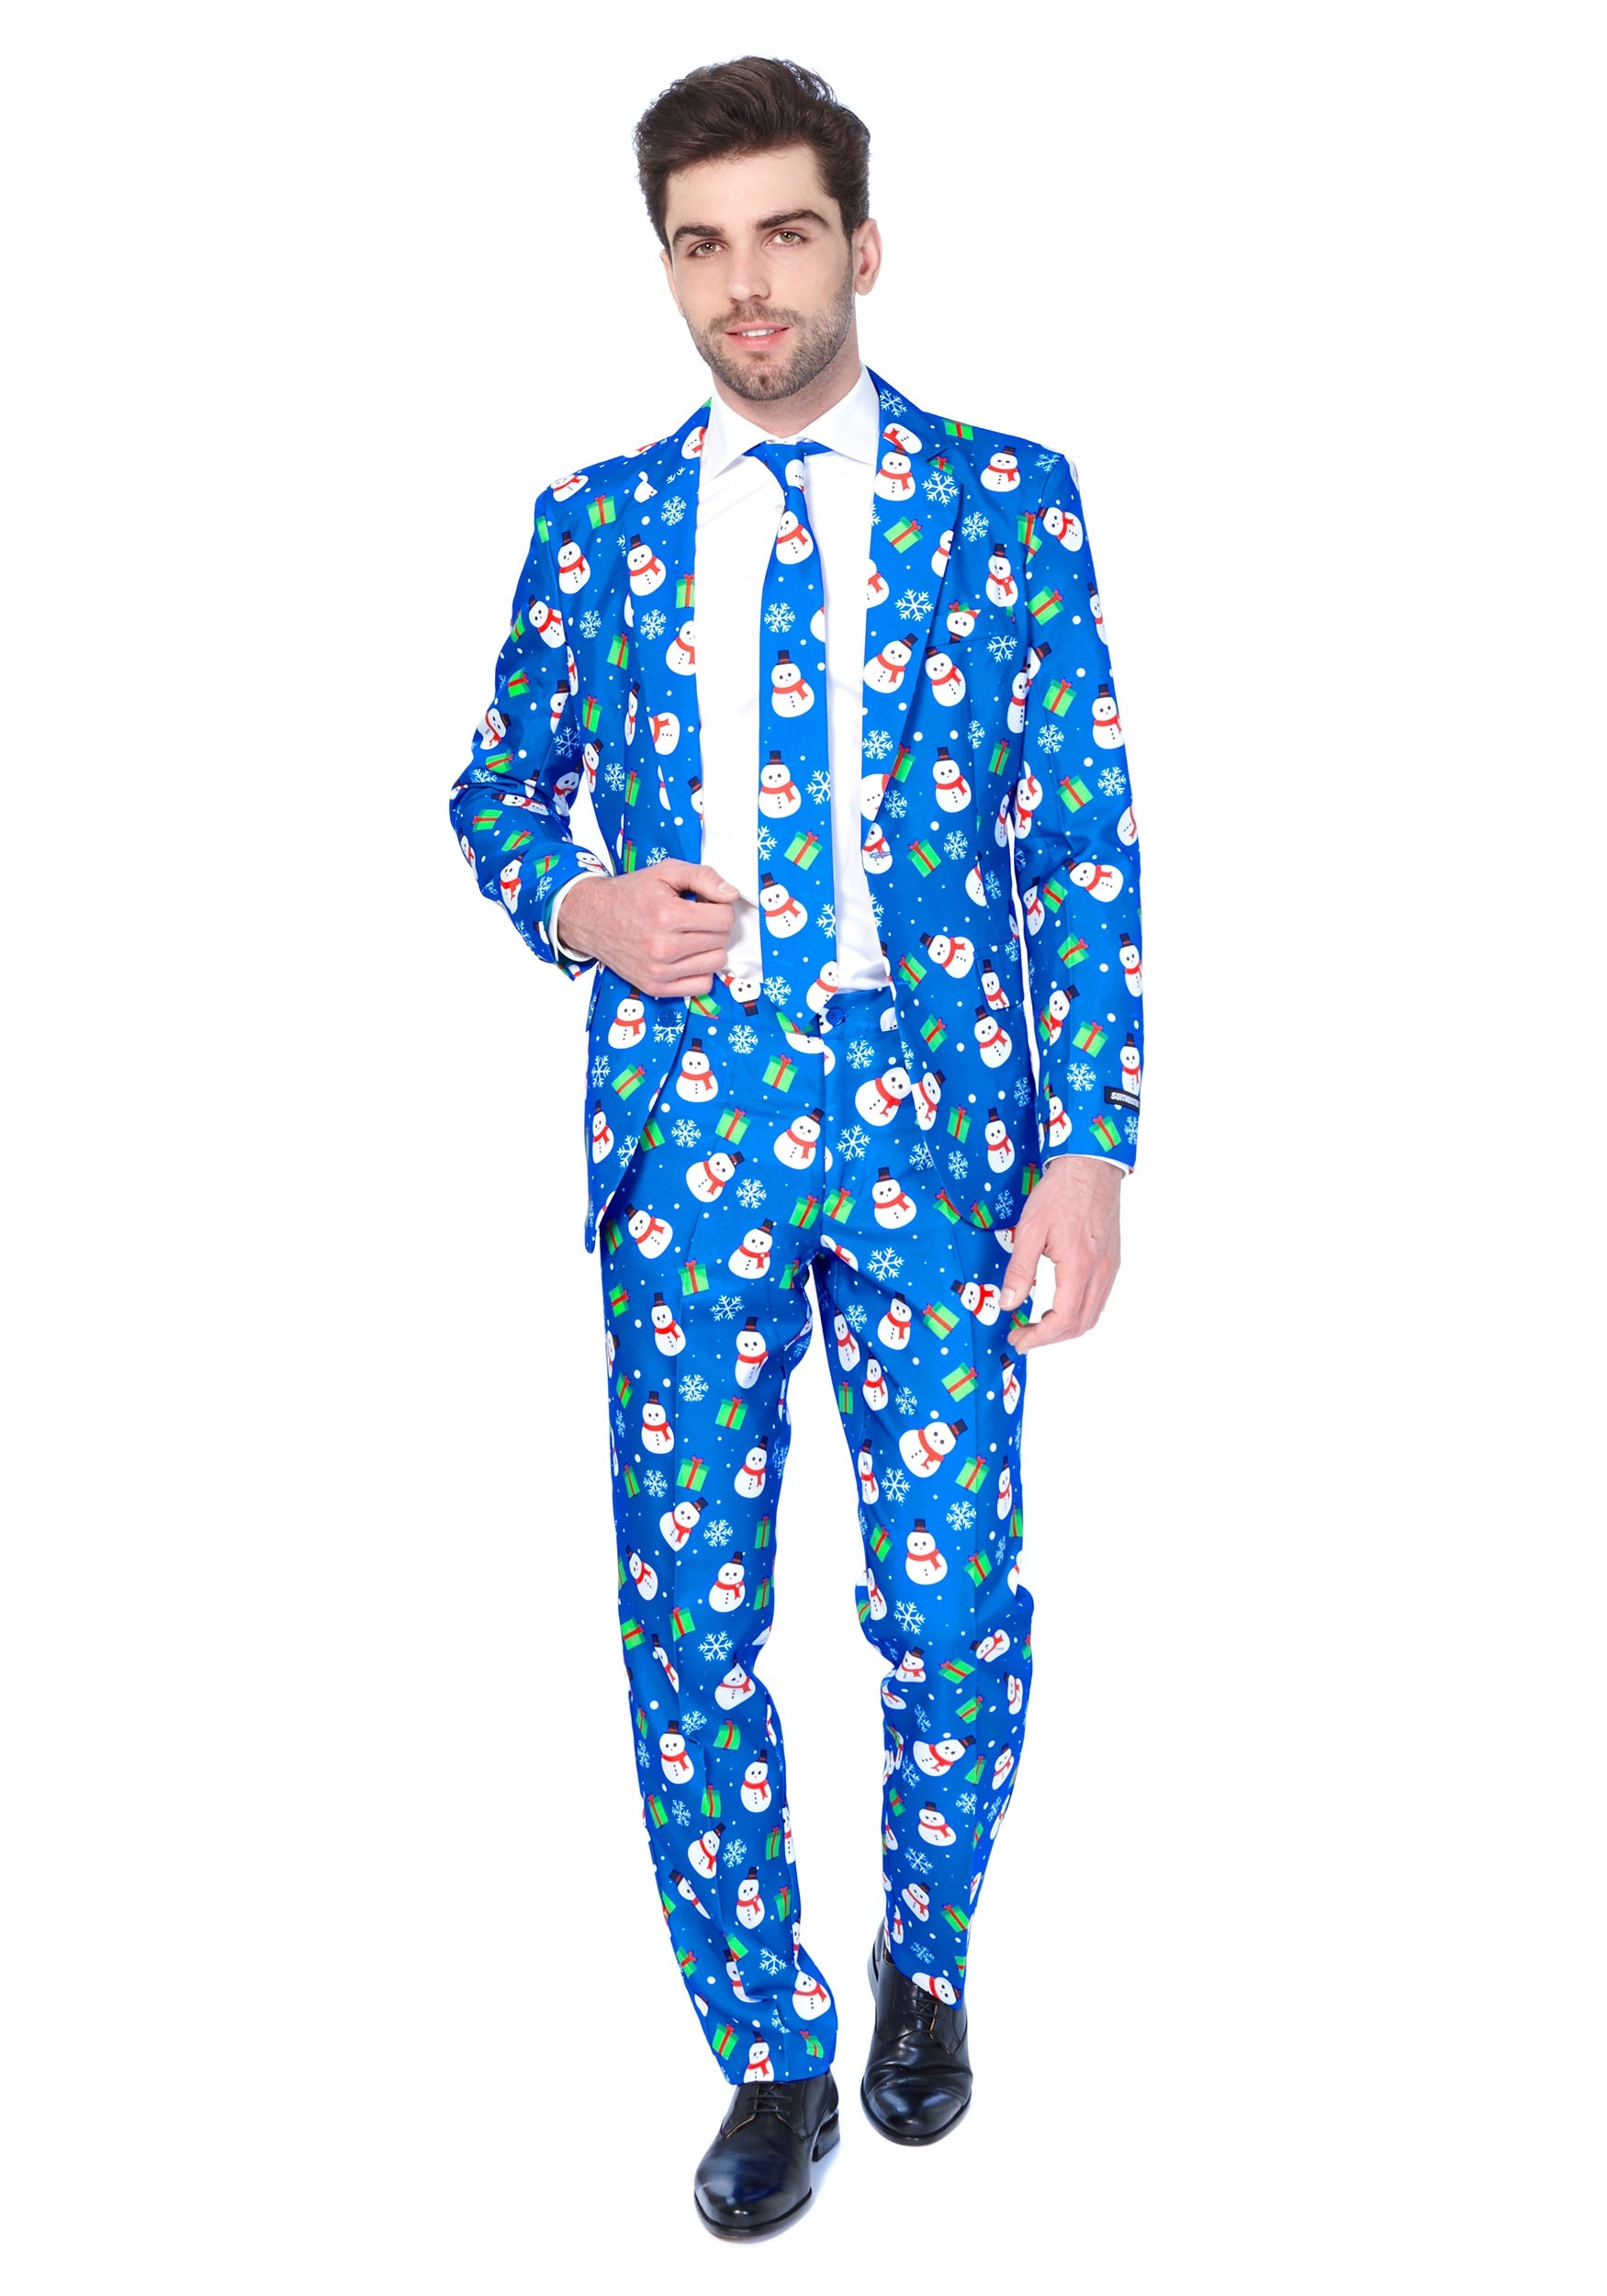 Blue Snowman Suitmeister Suit For Men